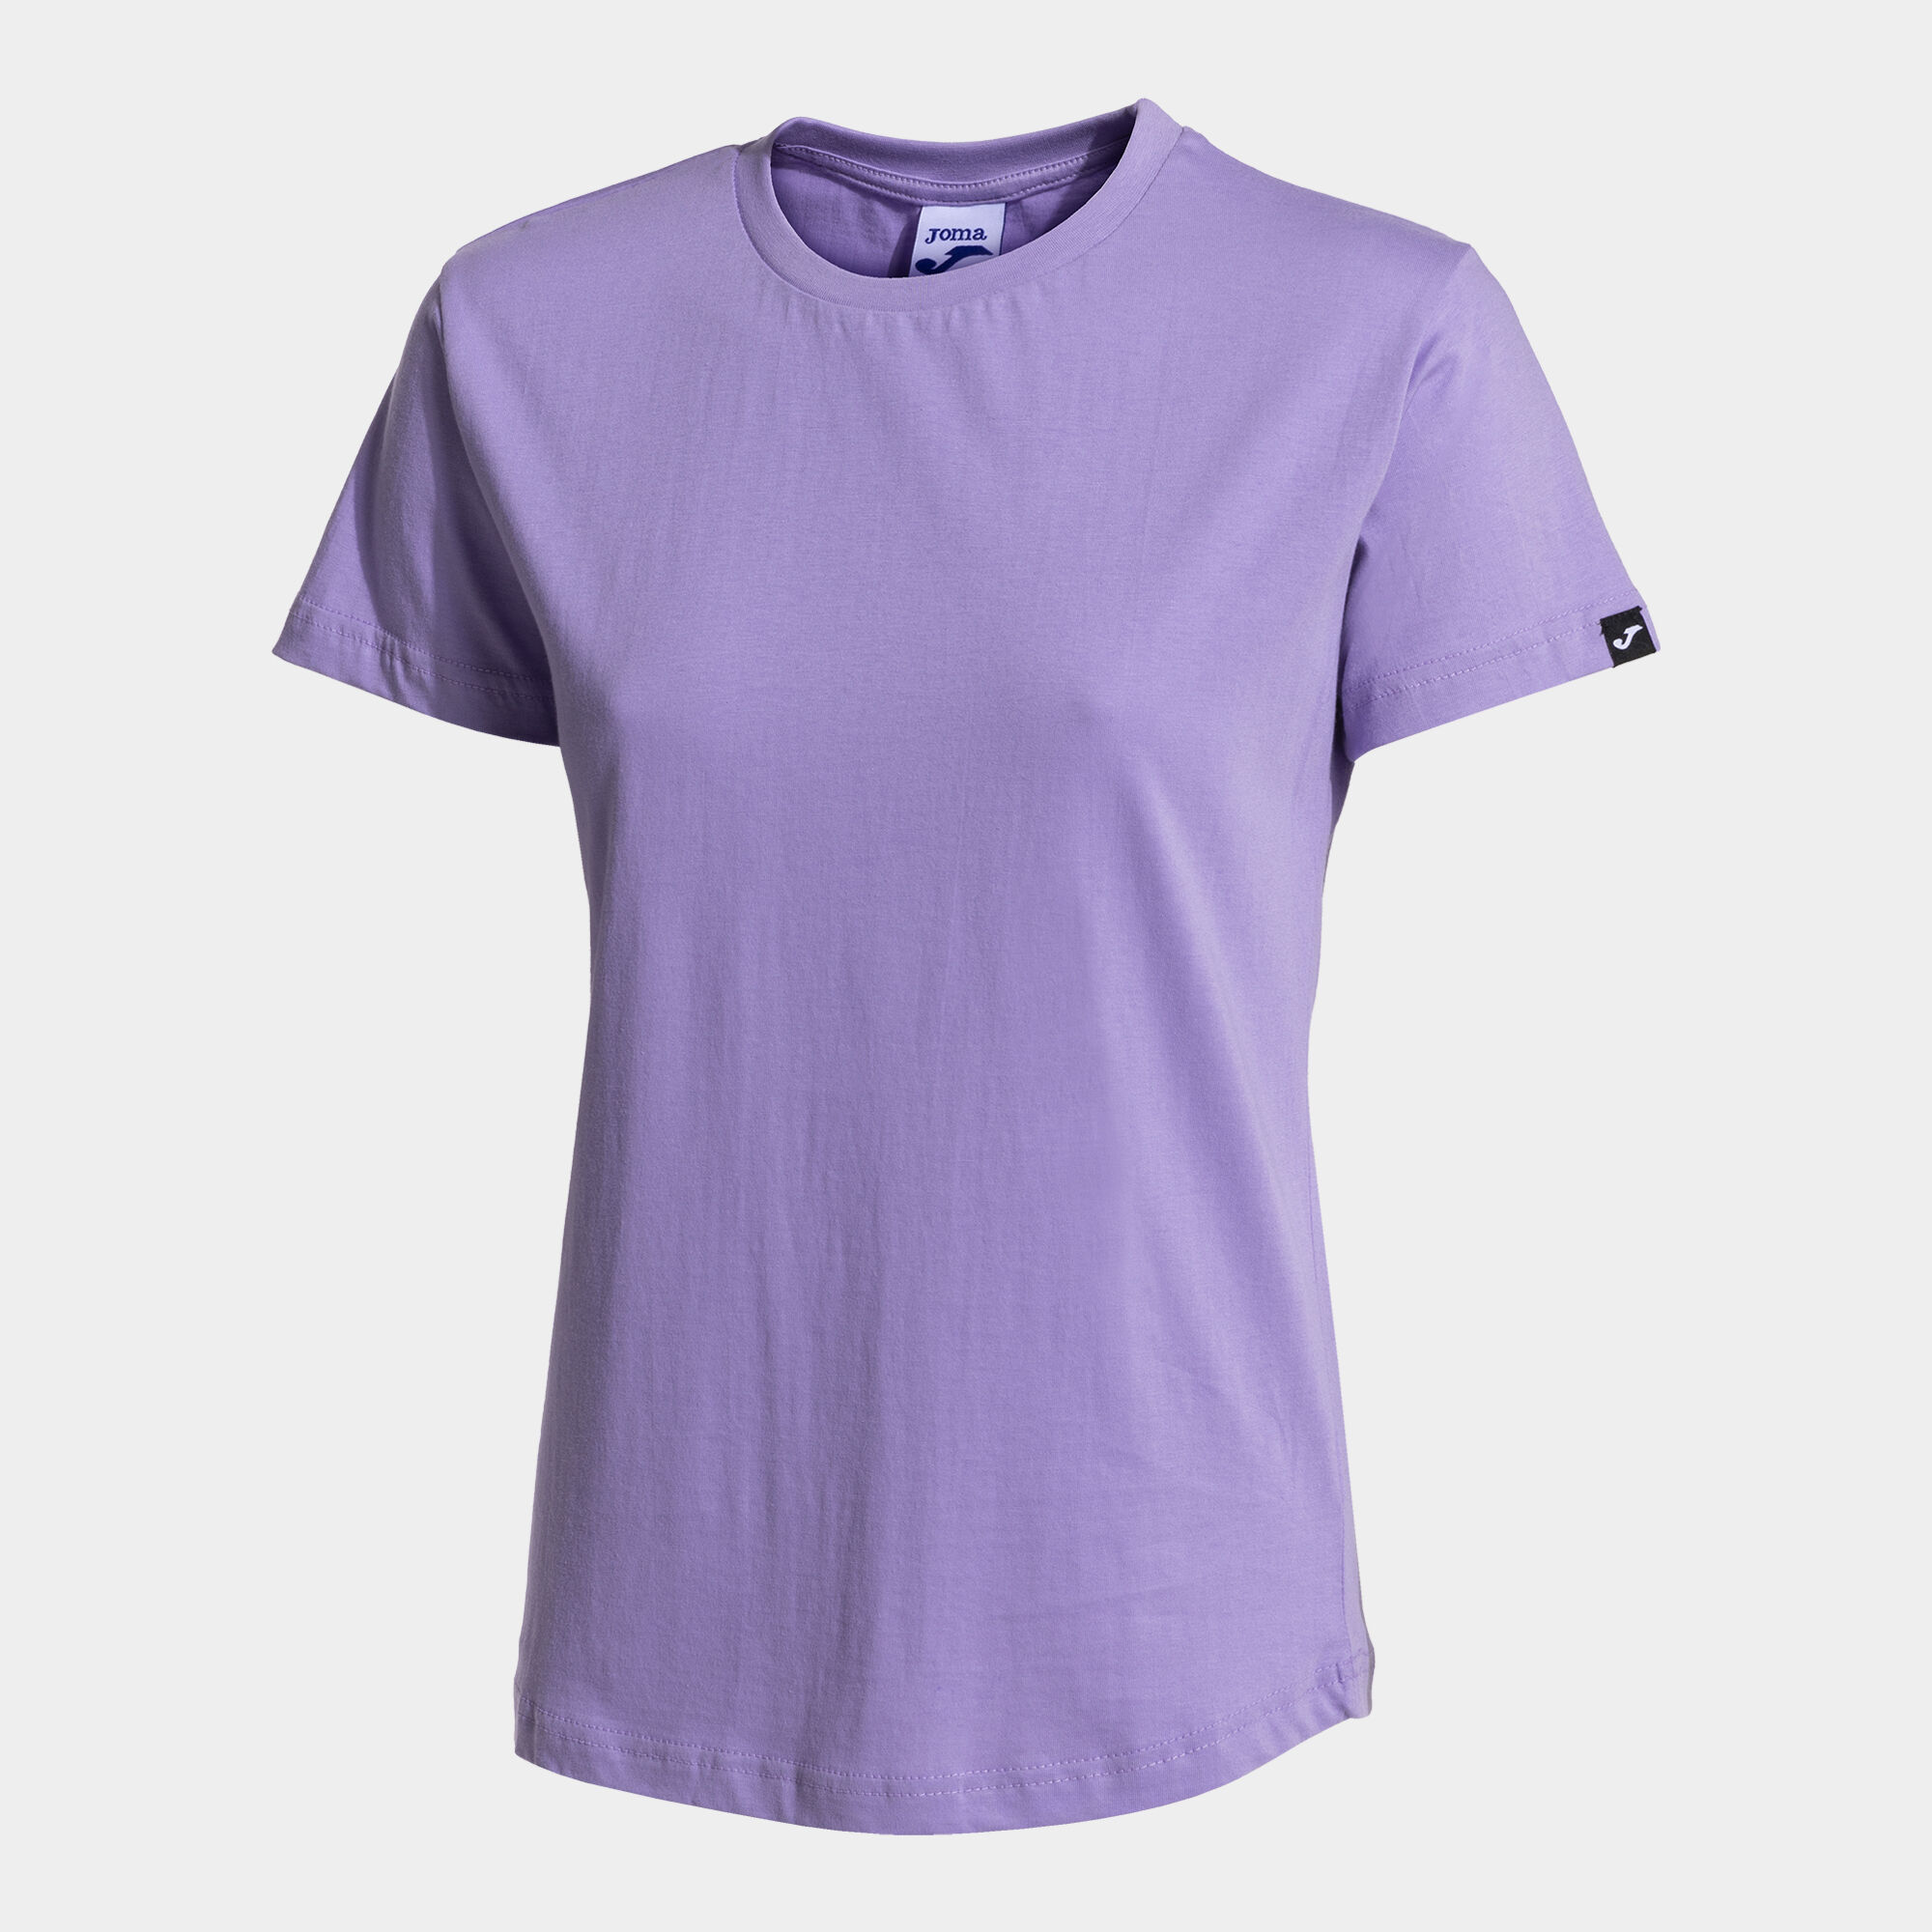 Shirt short sleeve woman Desert purple